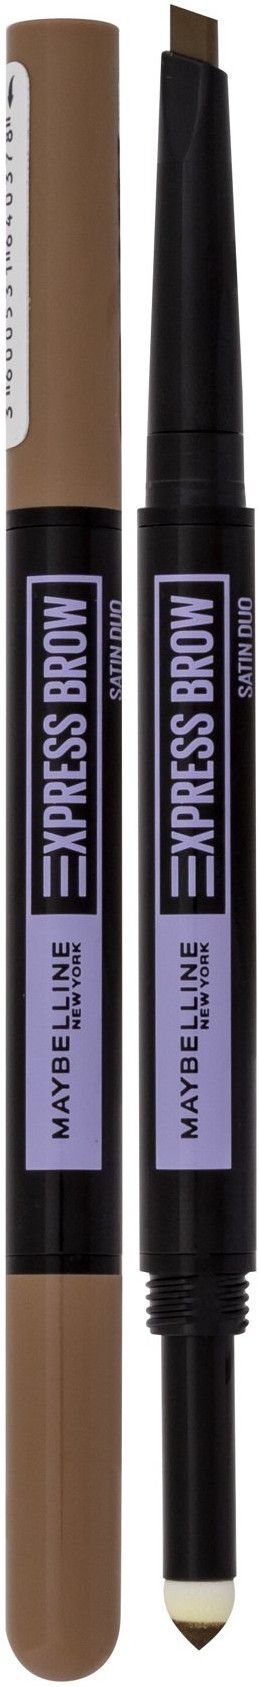 Express Dark Blonde Brow Duo Maybelline Satin 01